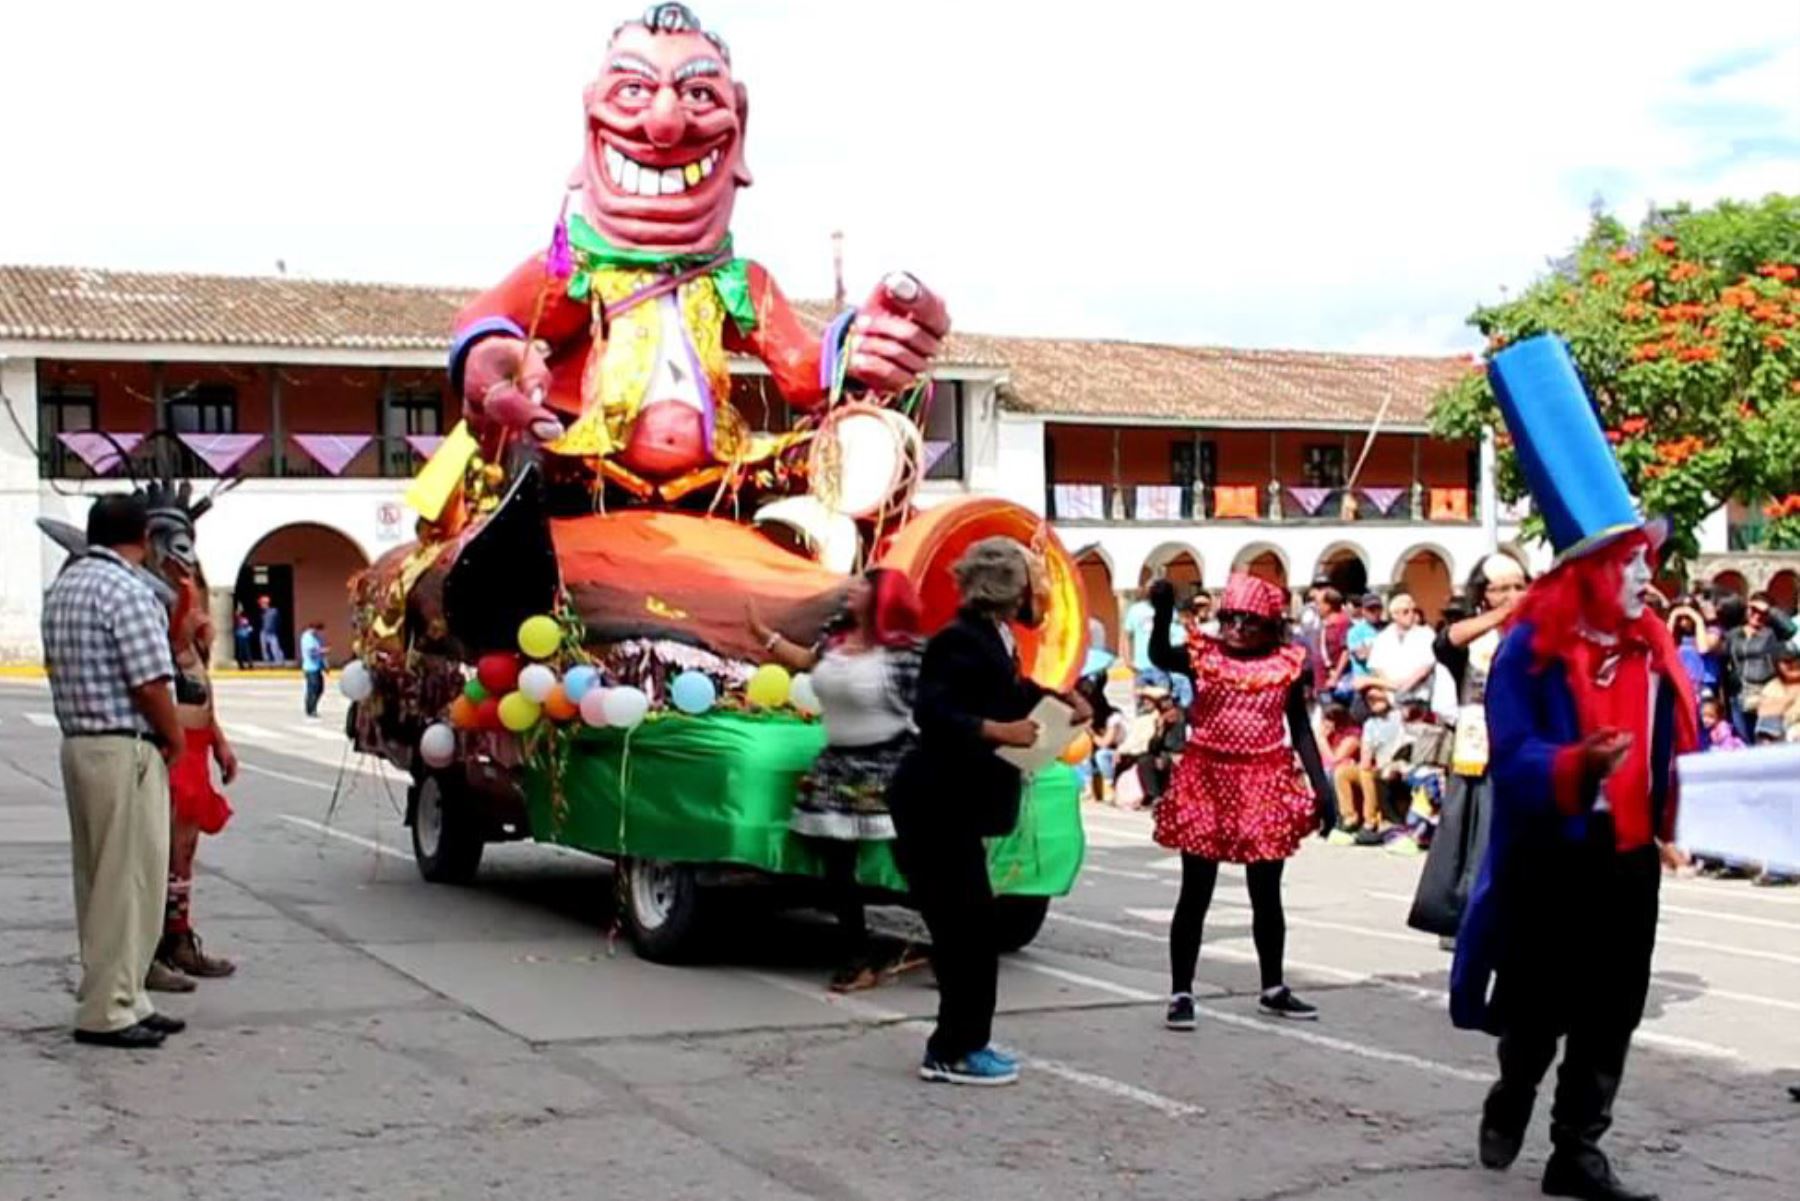 El Carnaval de Cajamarca inicia hoy su etapa de mayor plenitud con la celebración de la entrada del Ño Carnavalón a la ciudad, acompañado de una multitudinaria, exultante y colorida comparsa.